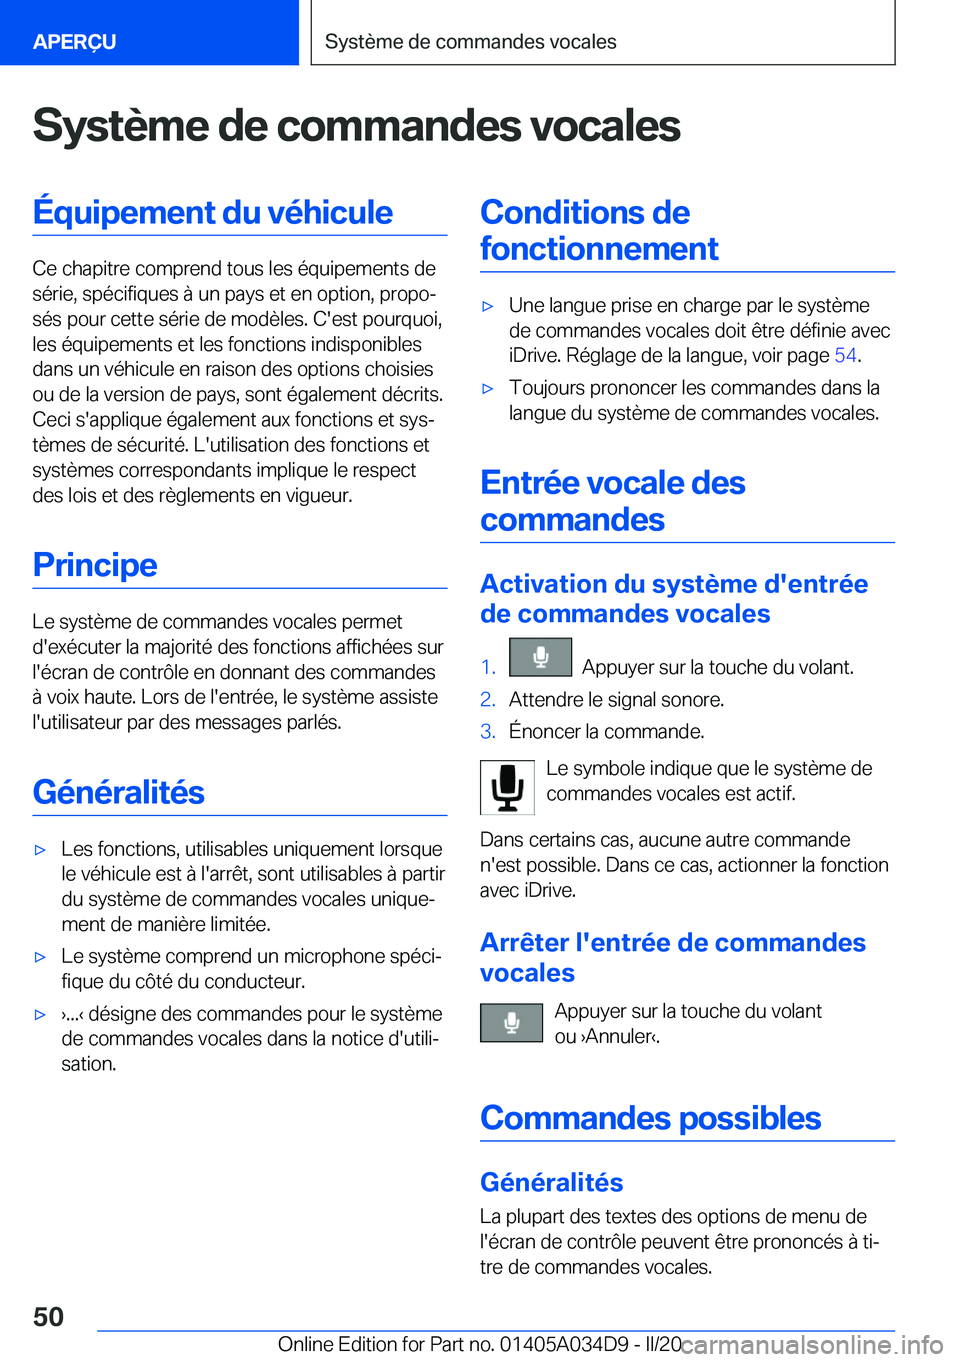 BMW X3 2020  Notices Demploi (in French) �S�y�s�t�è�m�e��d�e��c�o�m�m�a�n�d�e�s��v�o�c�a�l�e�s�